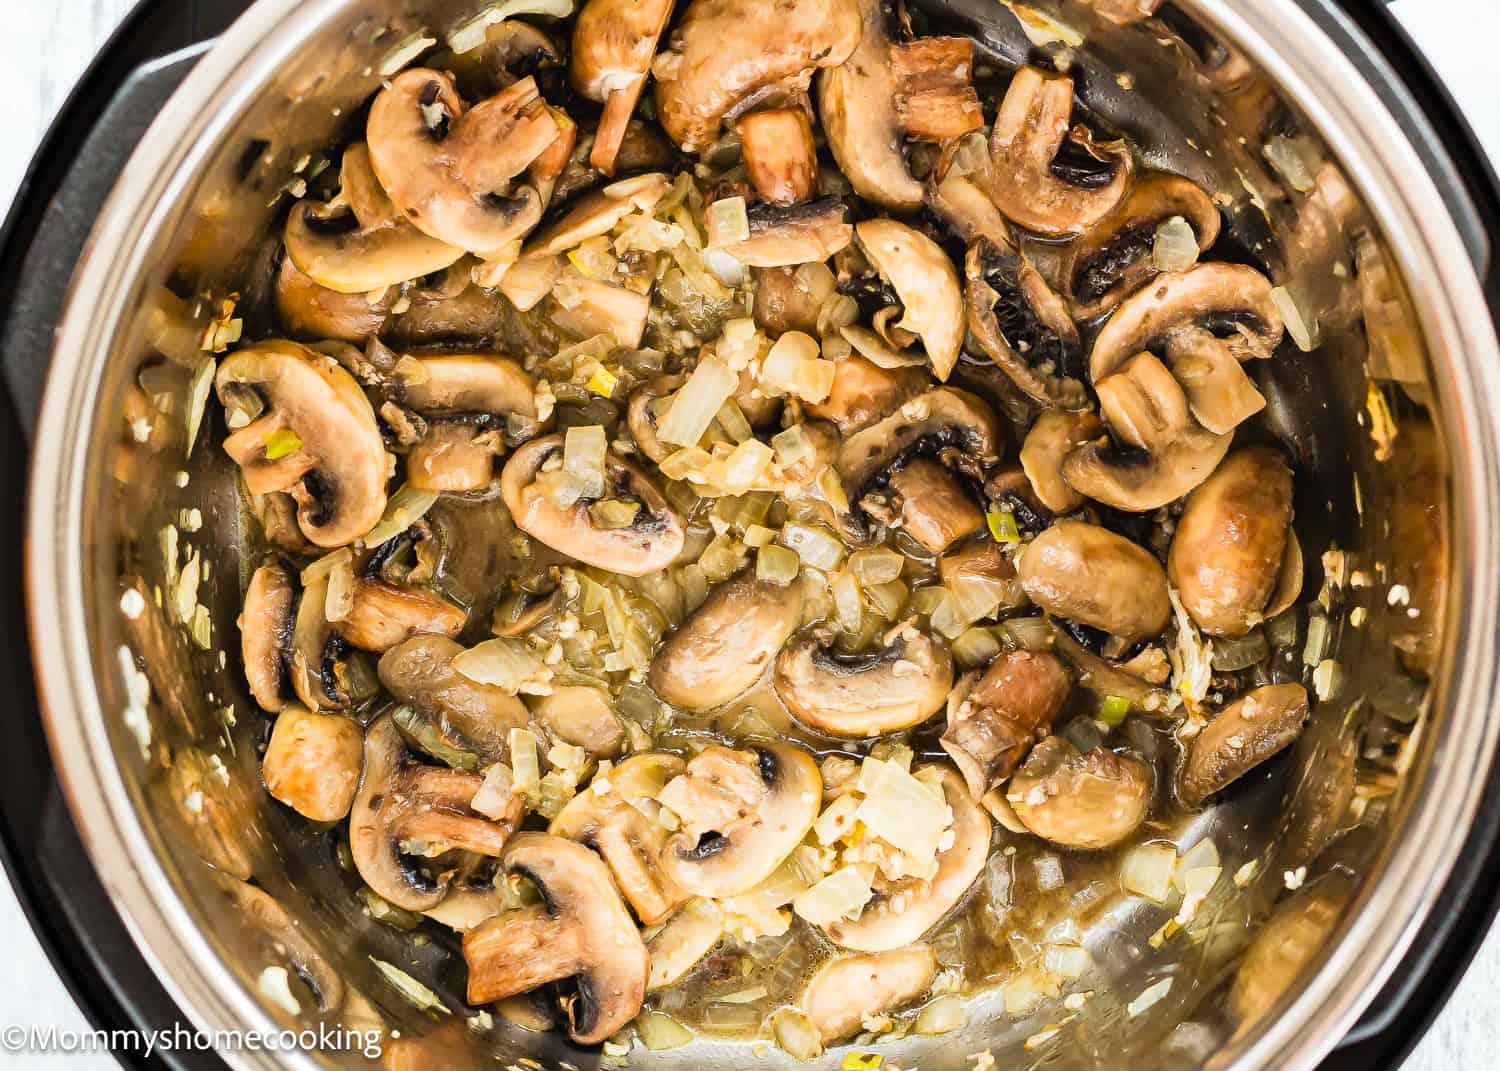 sautéed onions, garlic and mushrooms in a pot.